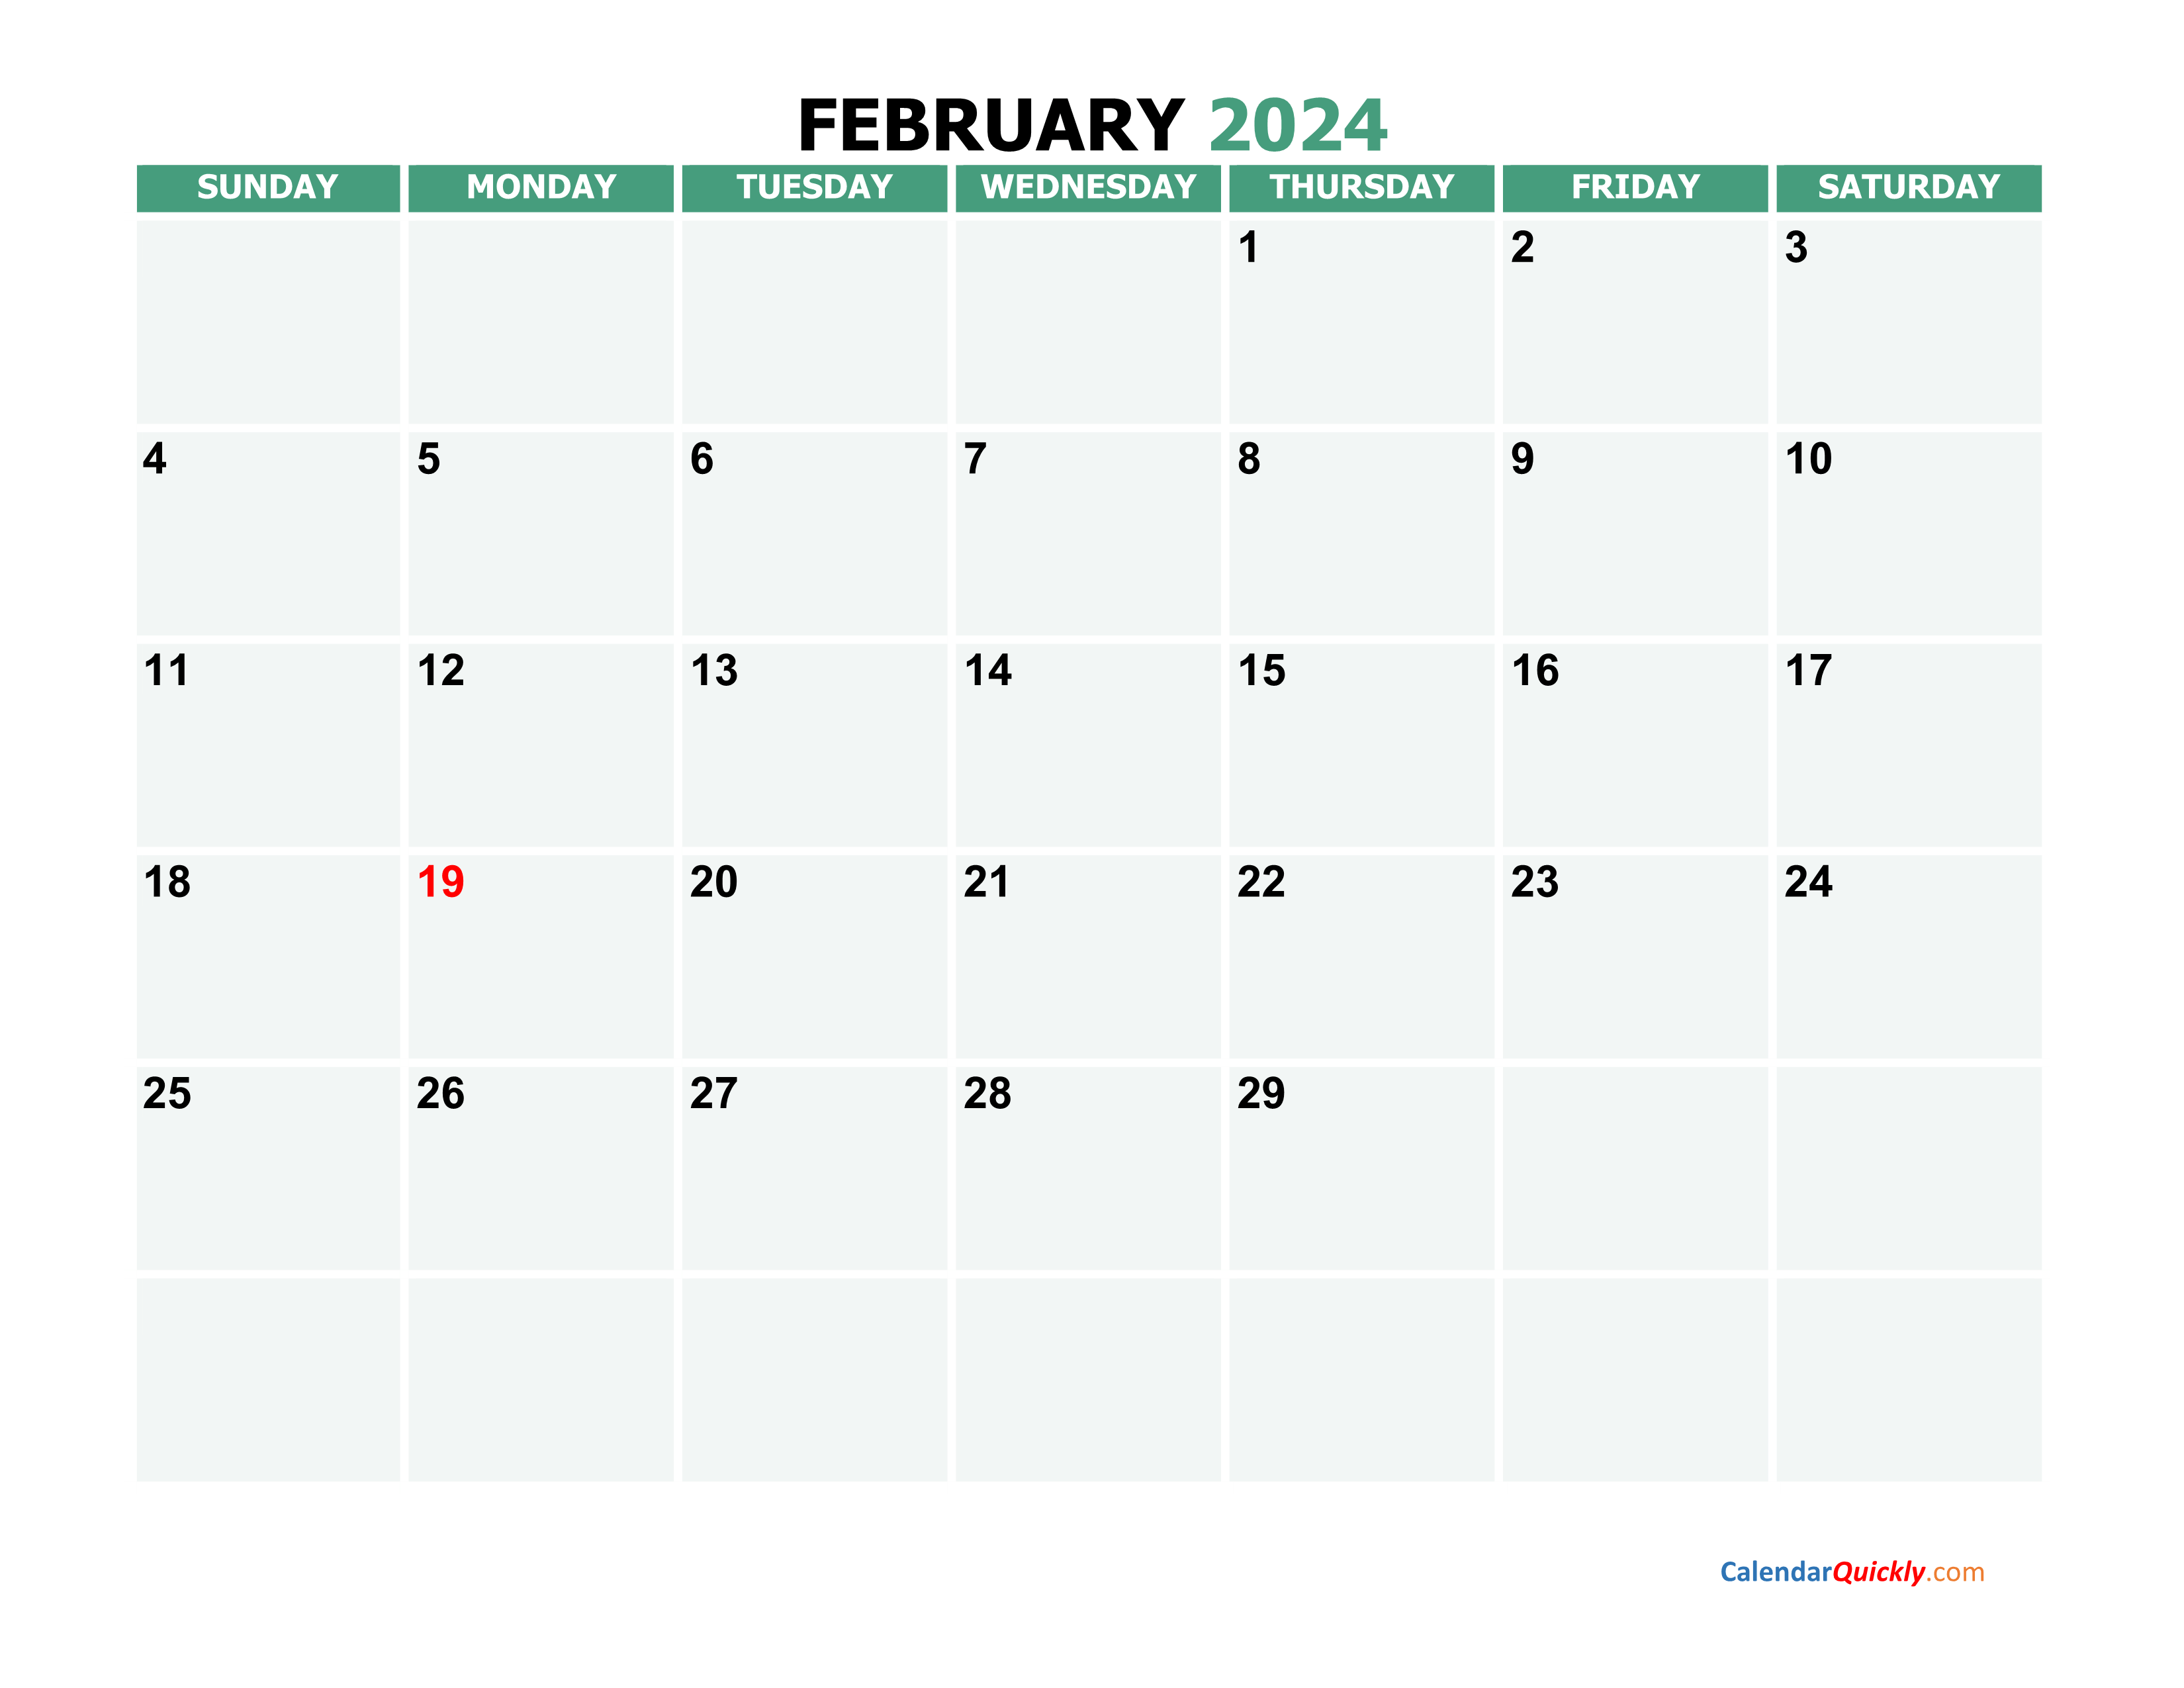 February 2024 Printable Calendar Calendar Quickly